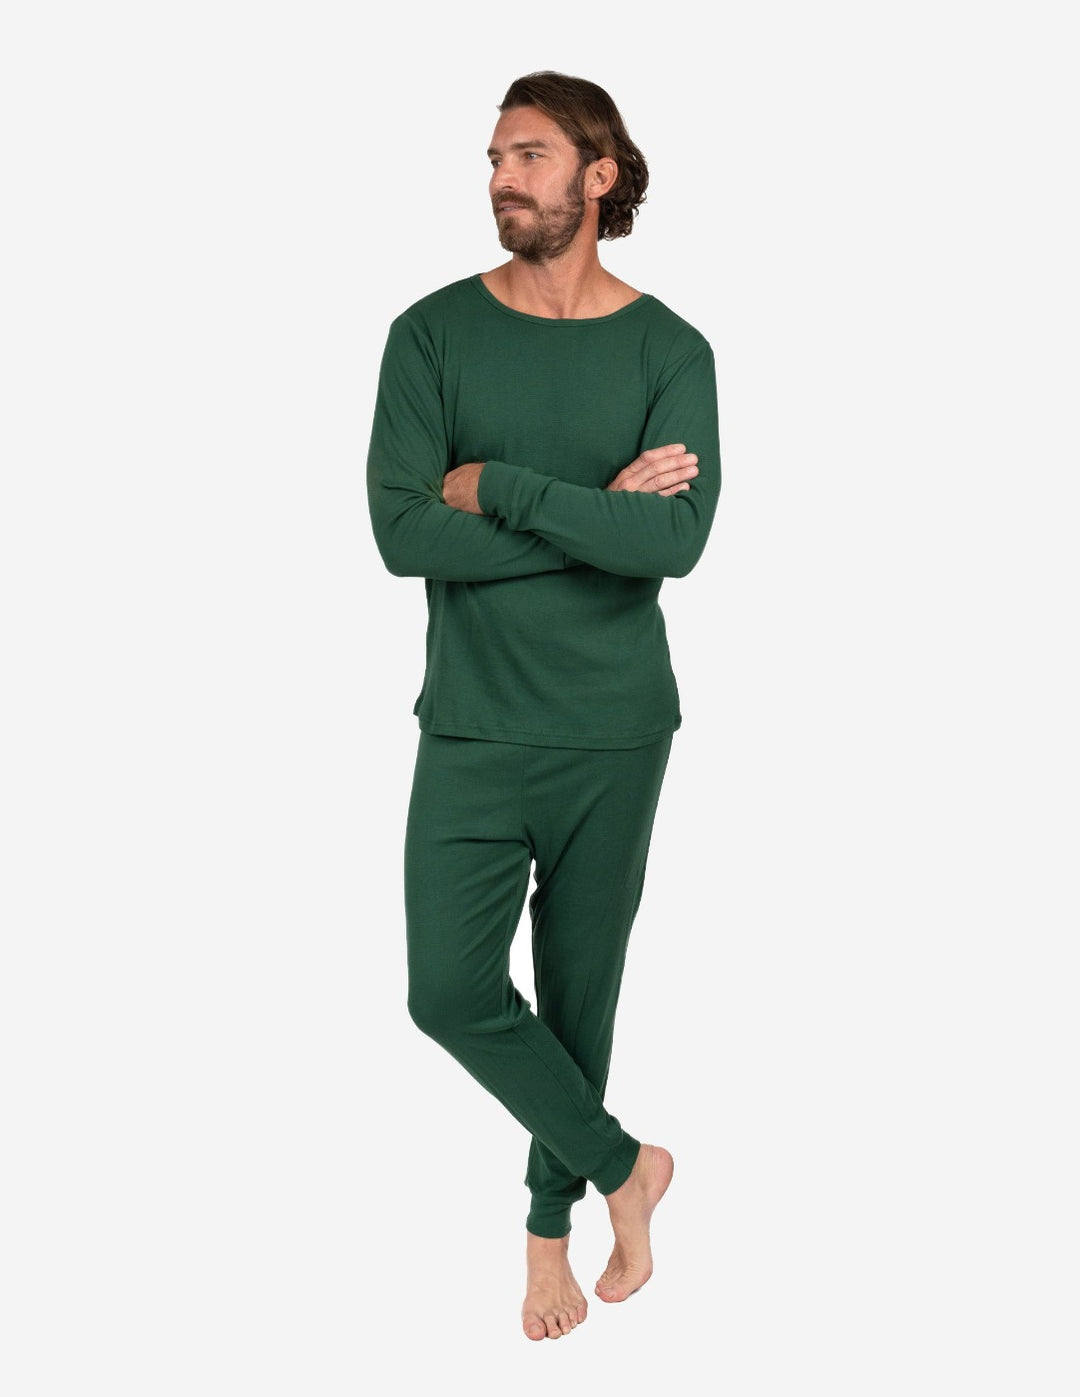 solid color dark green men's cotton pajamas